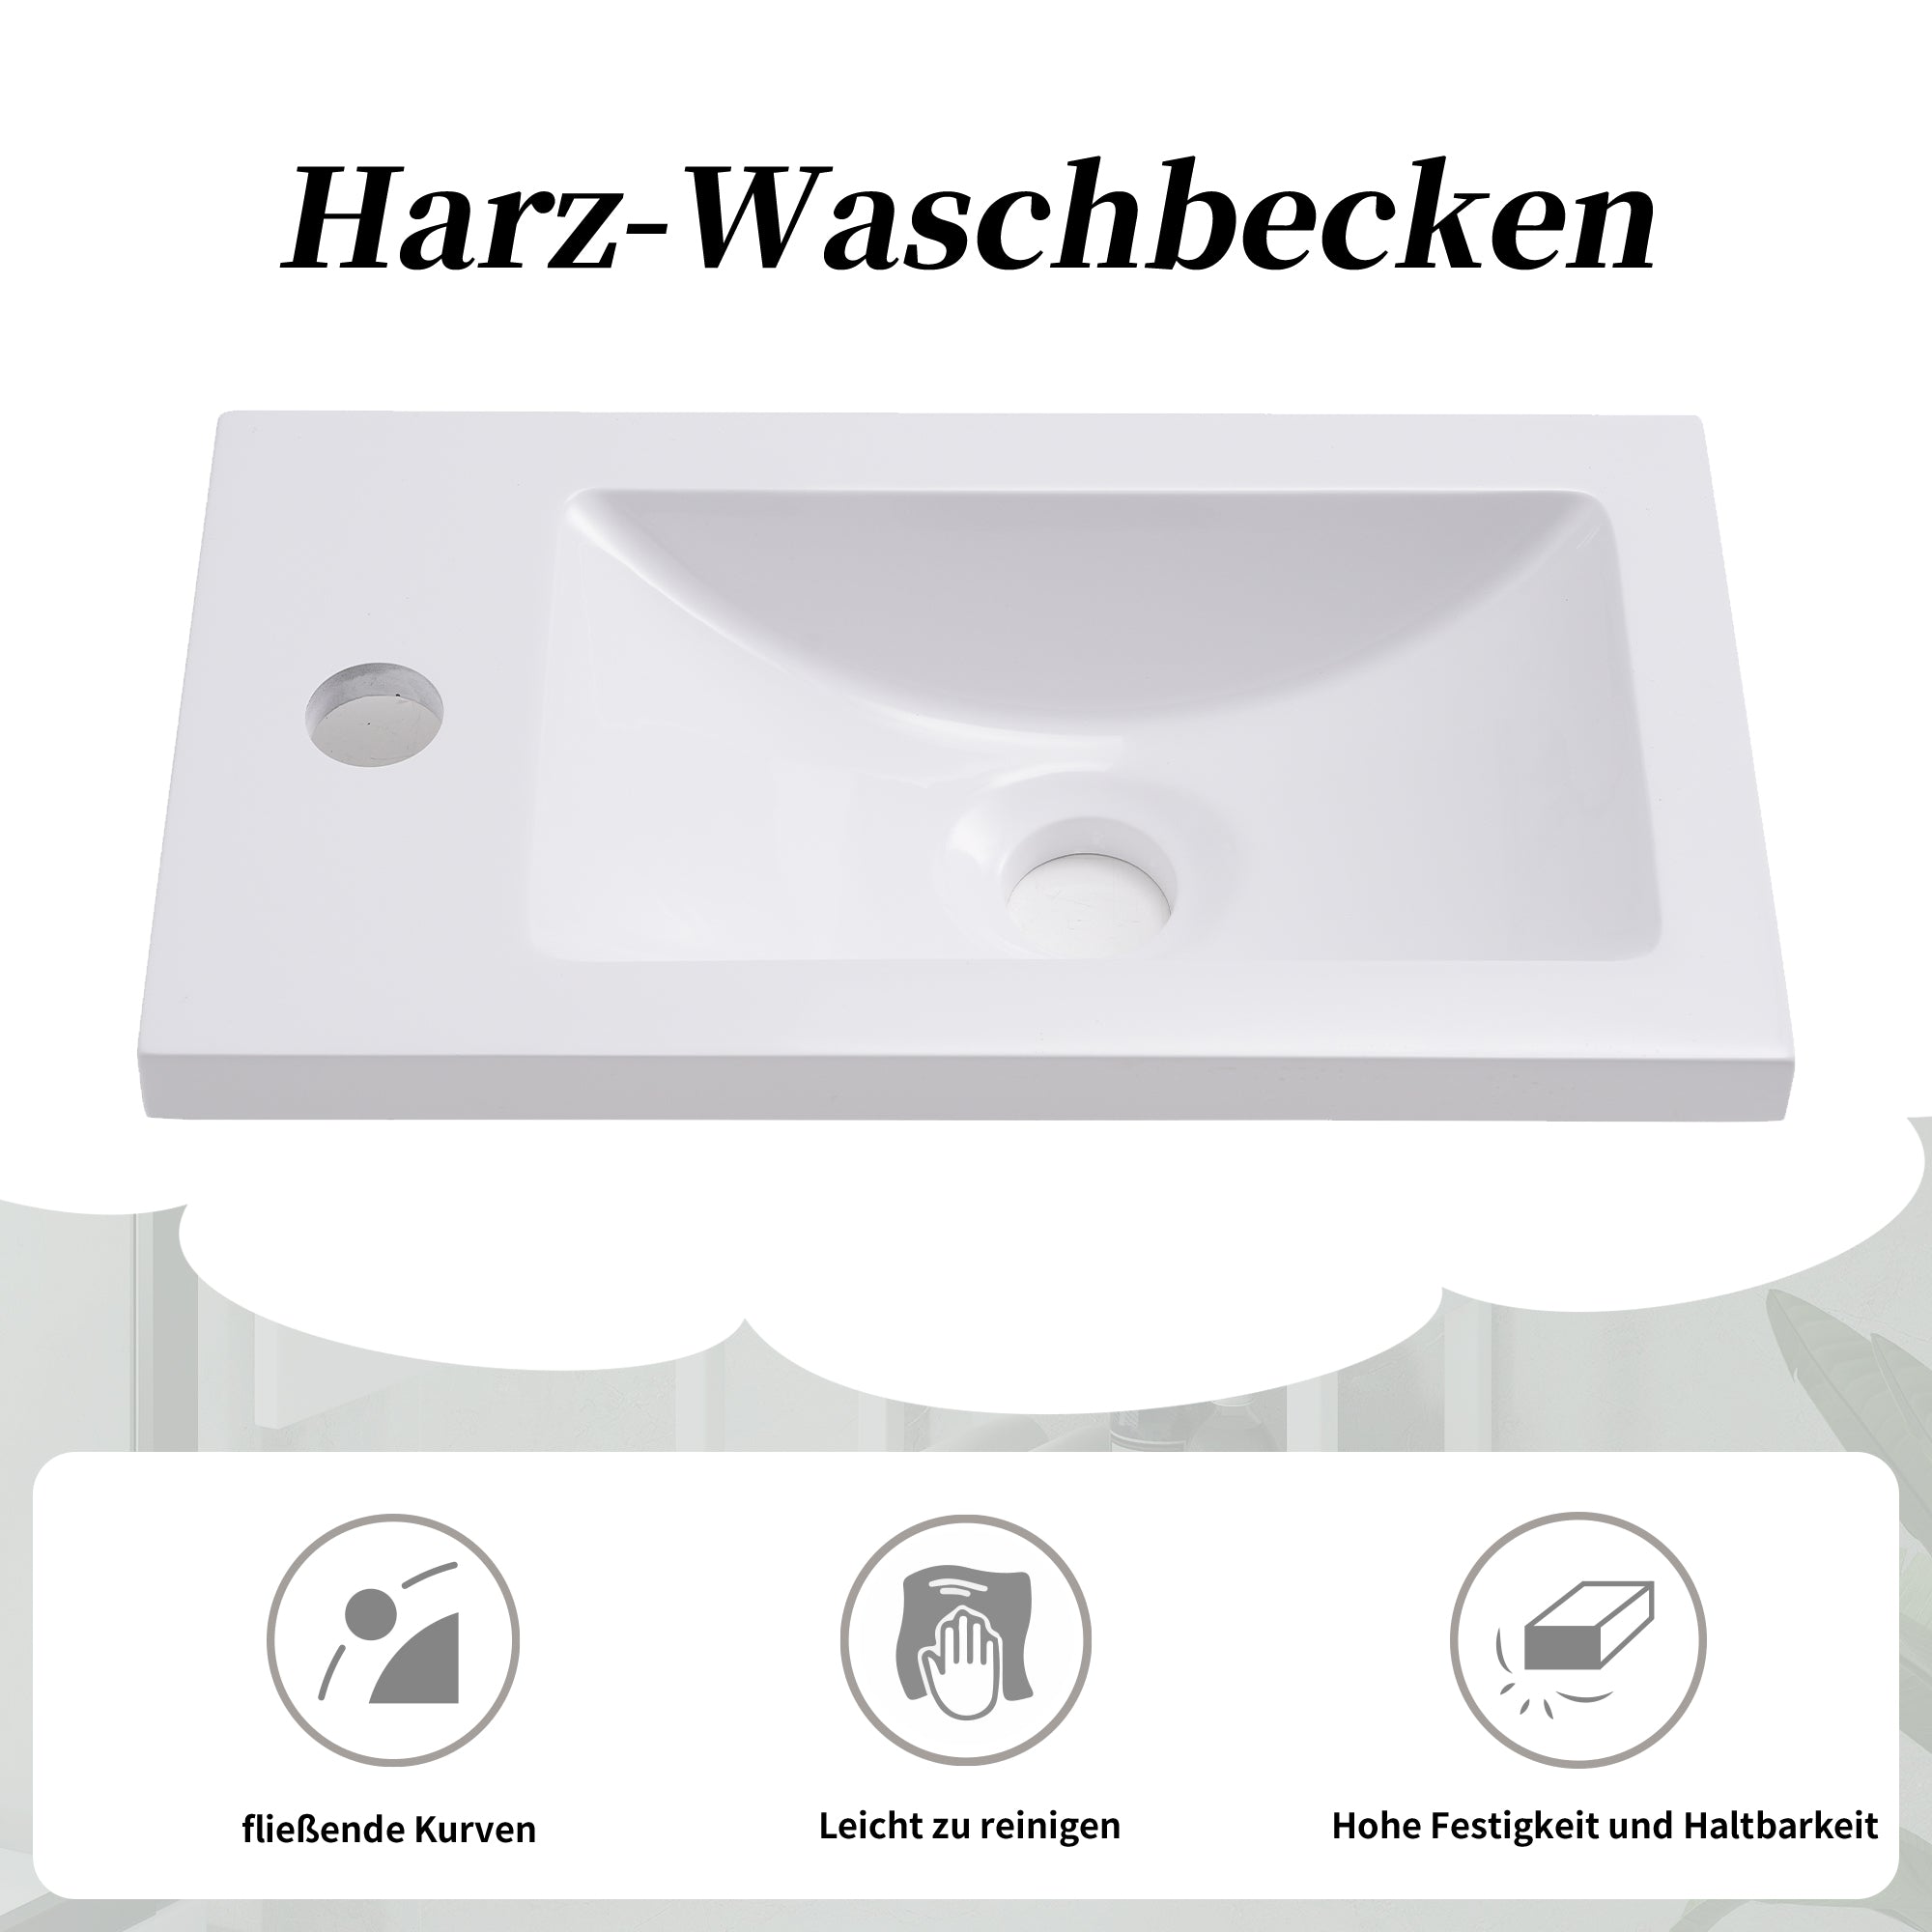 okiwsh Badezimmerwaschbecken 39*21*50 cm, Badezimmermöbel kleines Waschbecken mit Schminktisch, hängender Schminktisch, Waschbeckenschrank Badezimmermöbel (weiß)